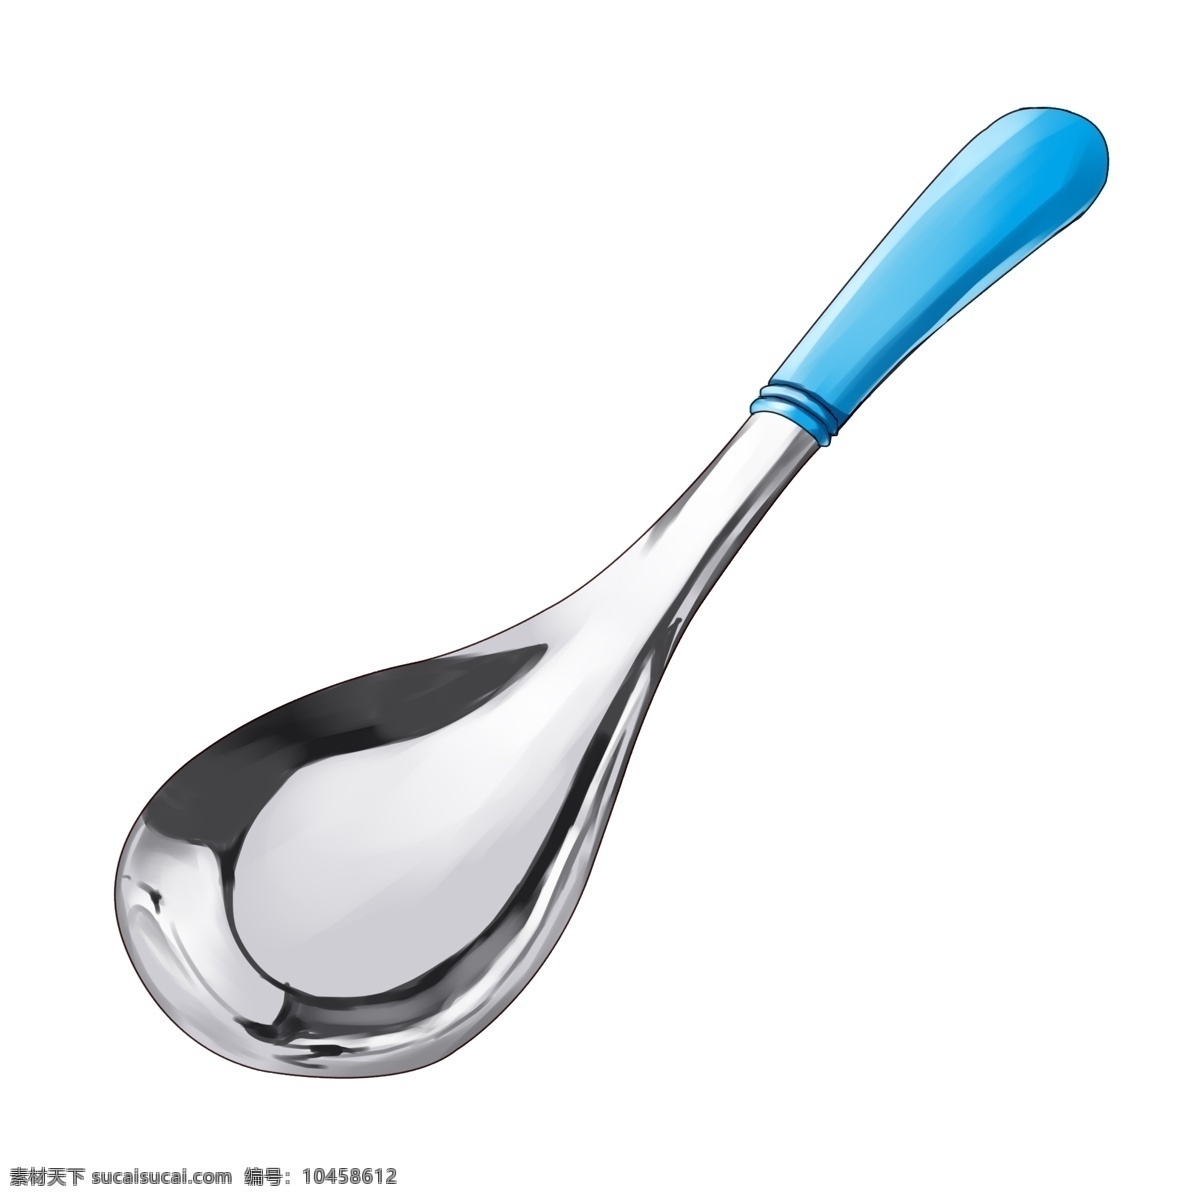 蓝色 手柄 金属 饭 勺 饭勺 蓝色手柄 仿真 光滑 勺子 实物 汤勺 金属勺子 餐具 简约 半圆 不锈钢勺子